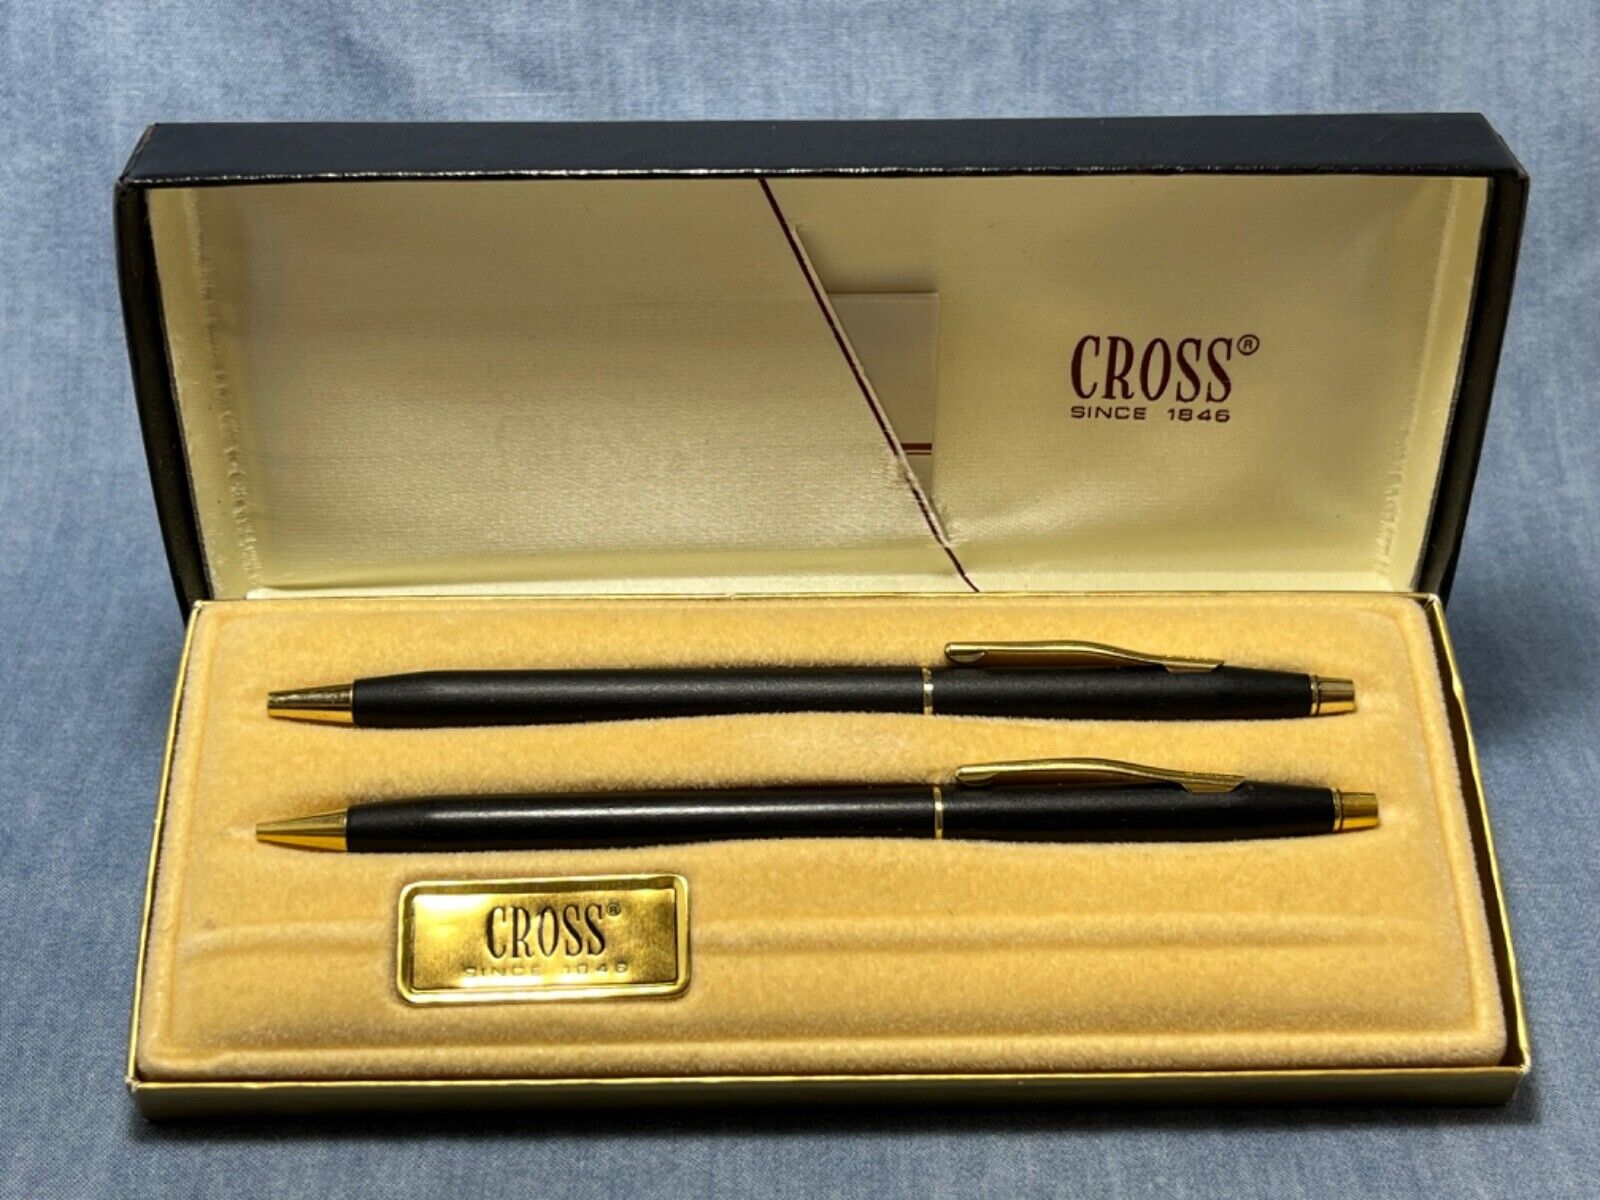 Cross Classic Black No. 250105 - 23K Gold Trim - Pen & 0.5mm Pencil, Box, Manual